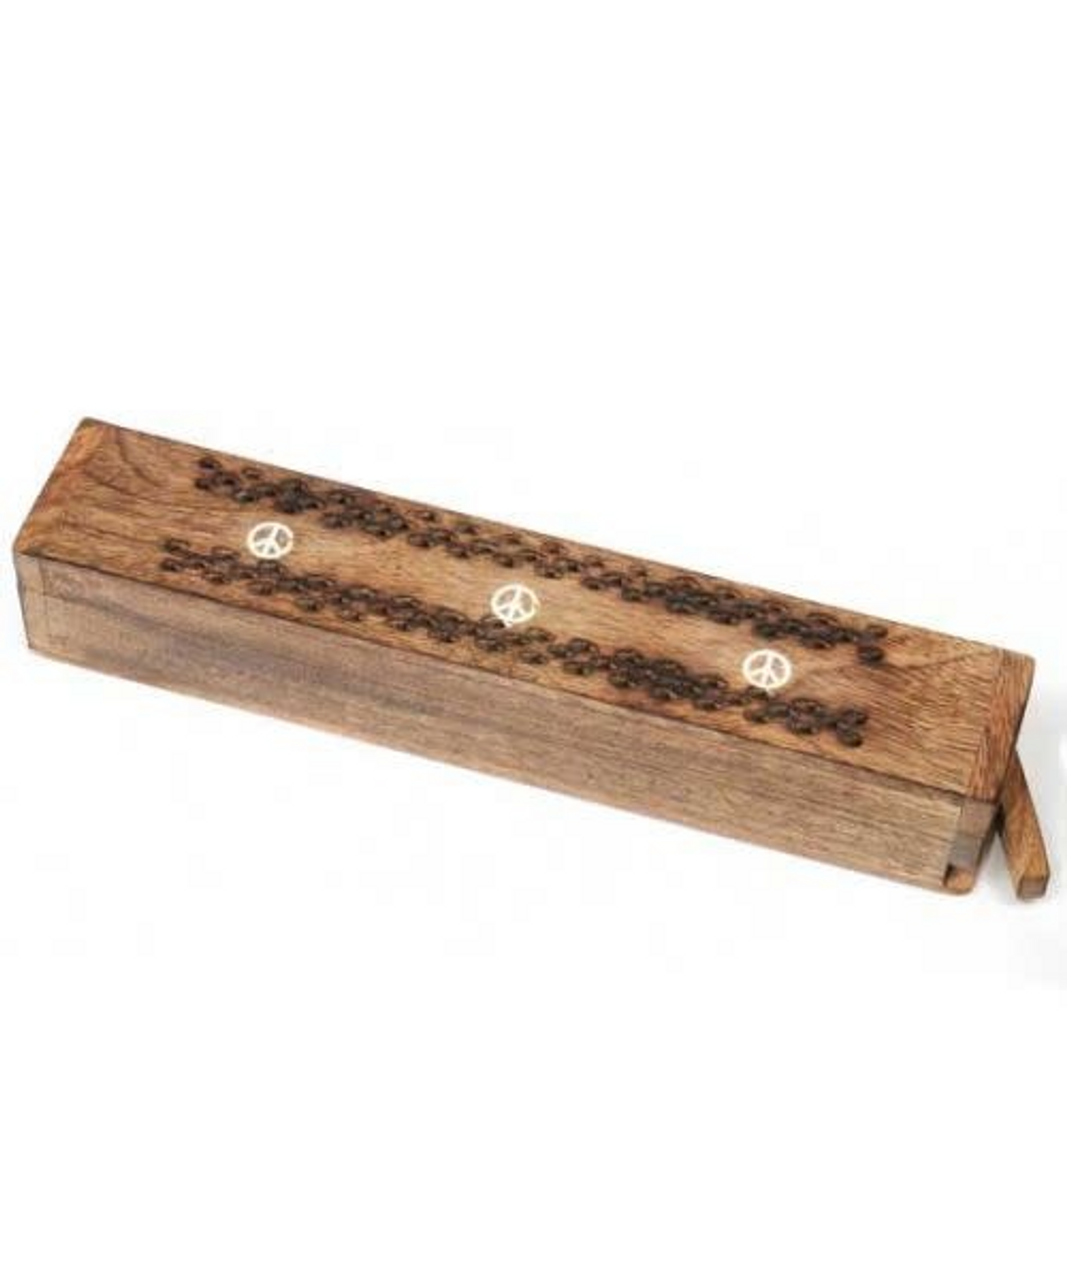 Wood Incense Box Inlay Peace Sign